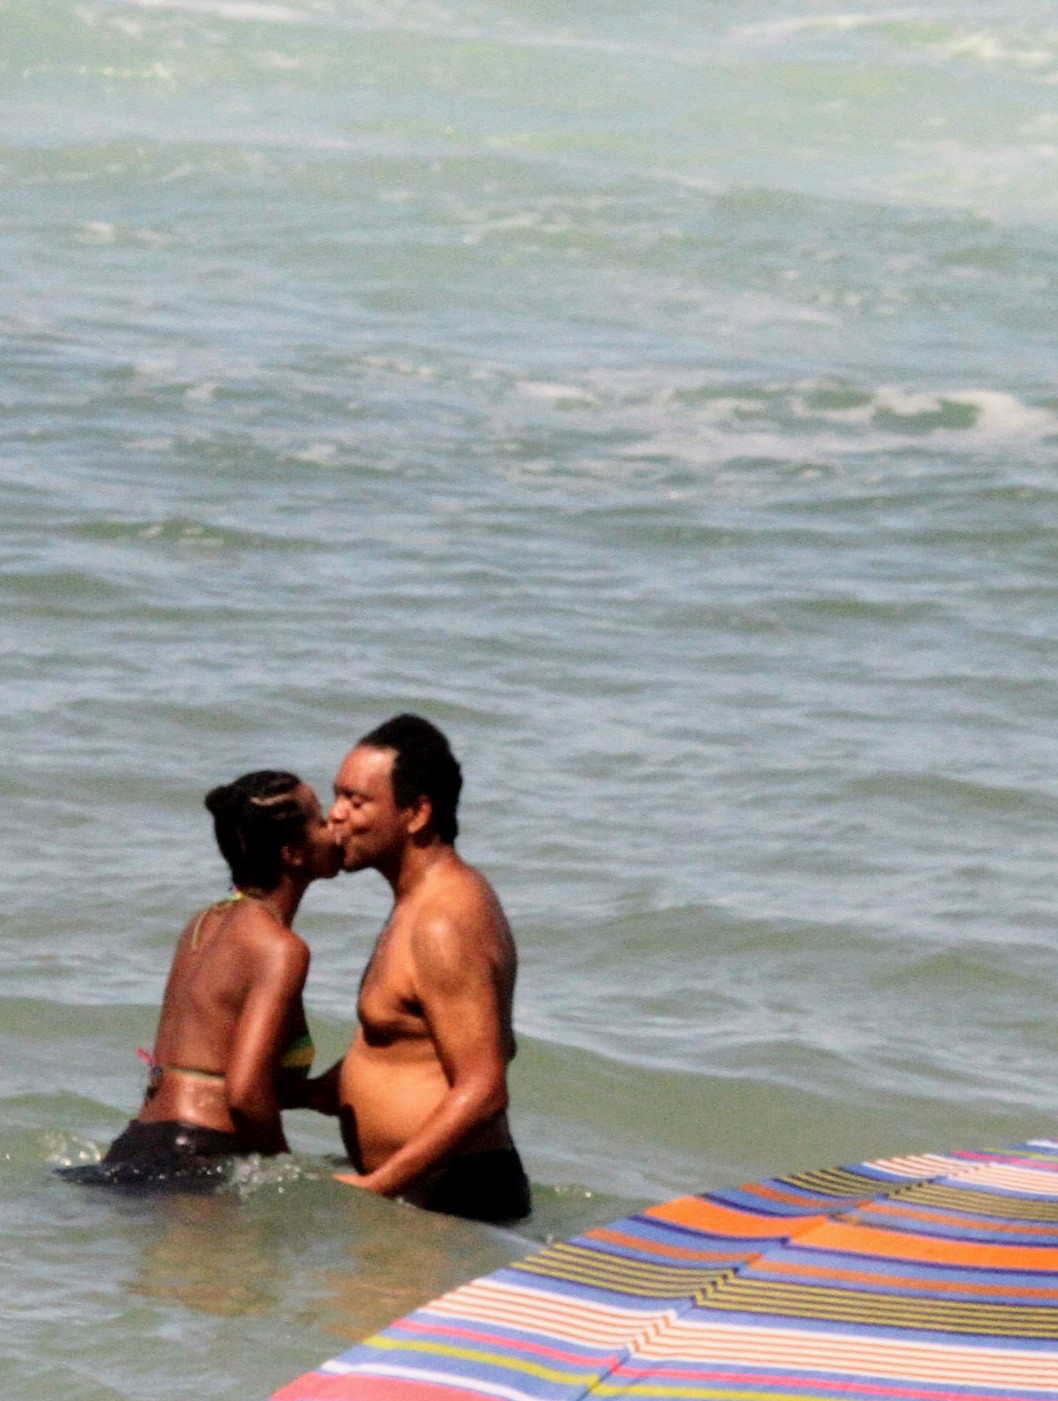 Foto de Maju Coutinho com o marido, Agostinho Paulo Moura, se beijando no mar